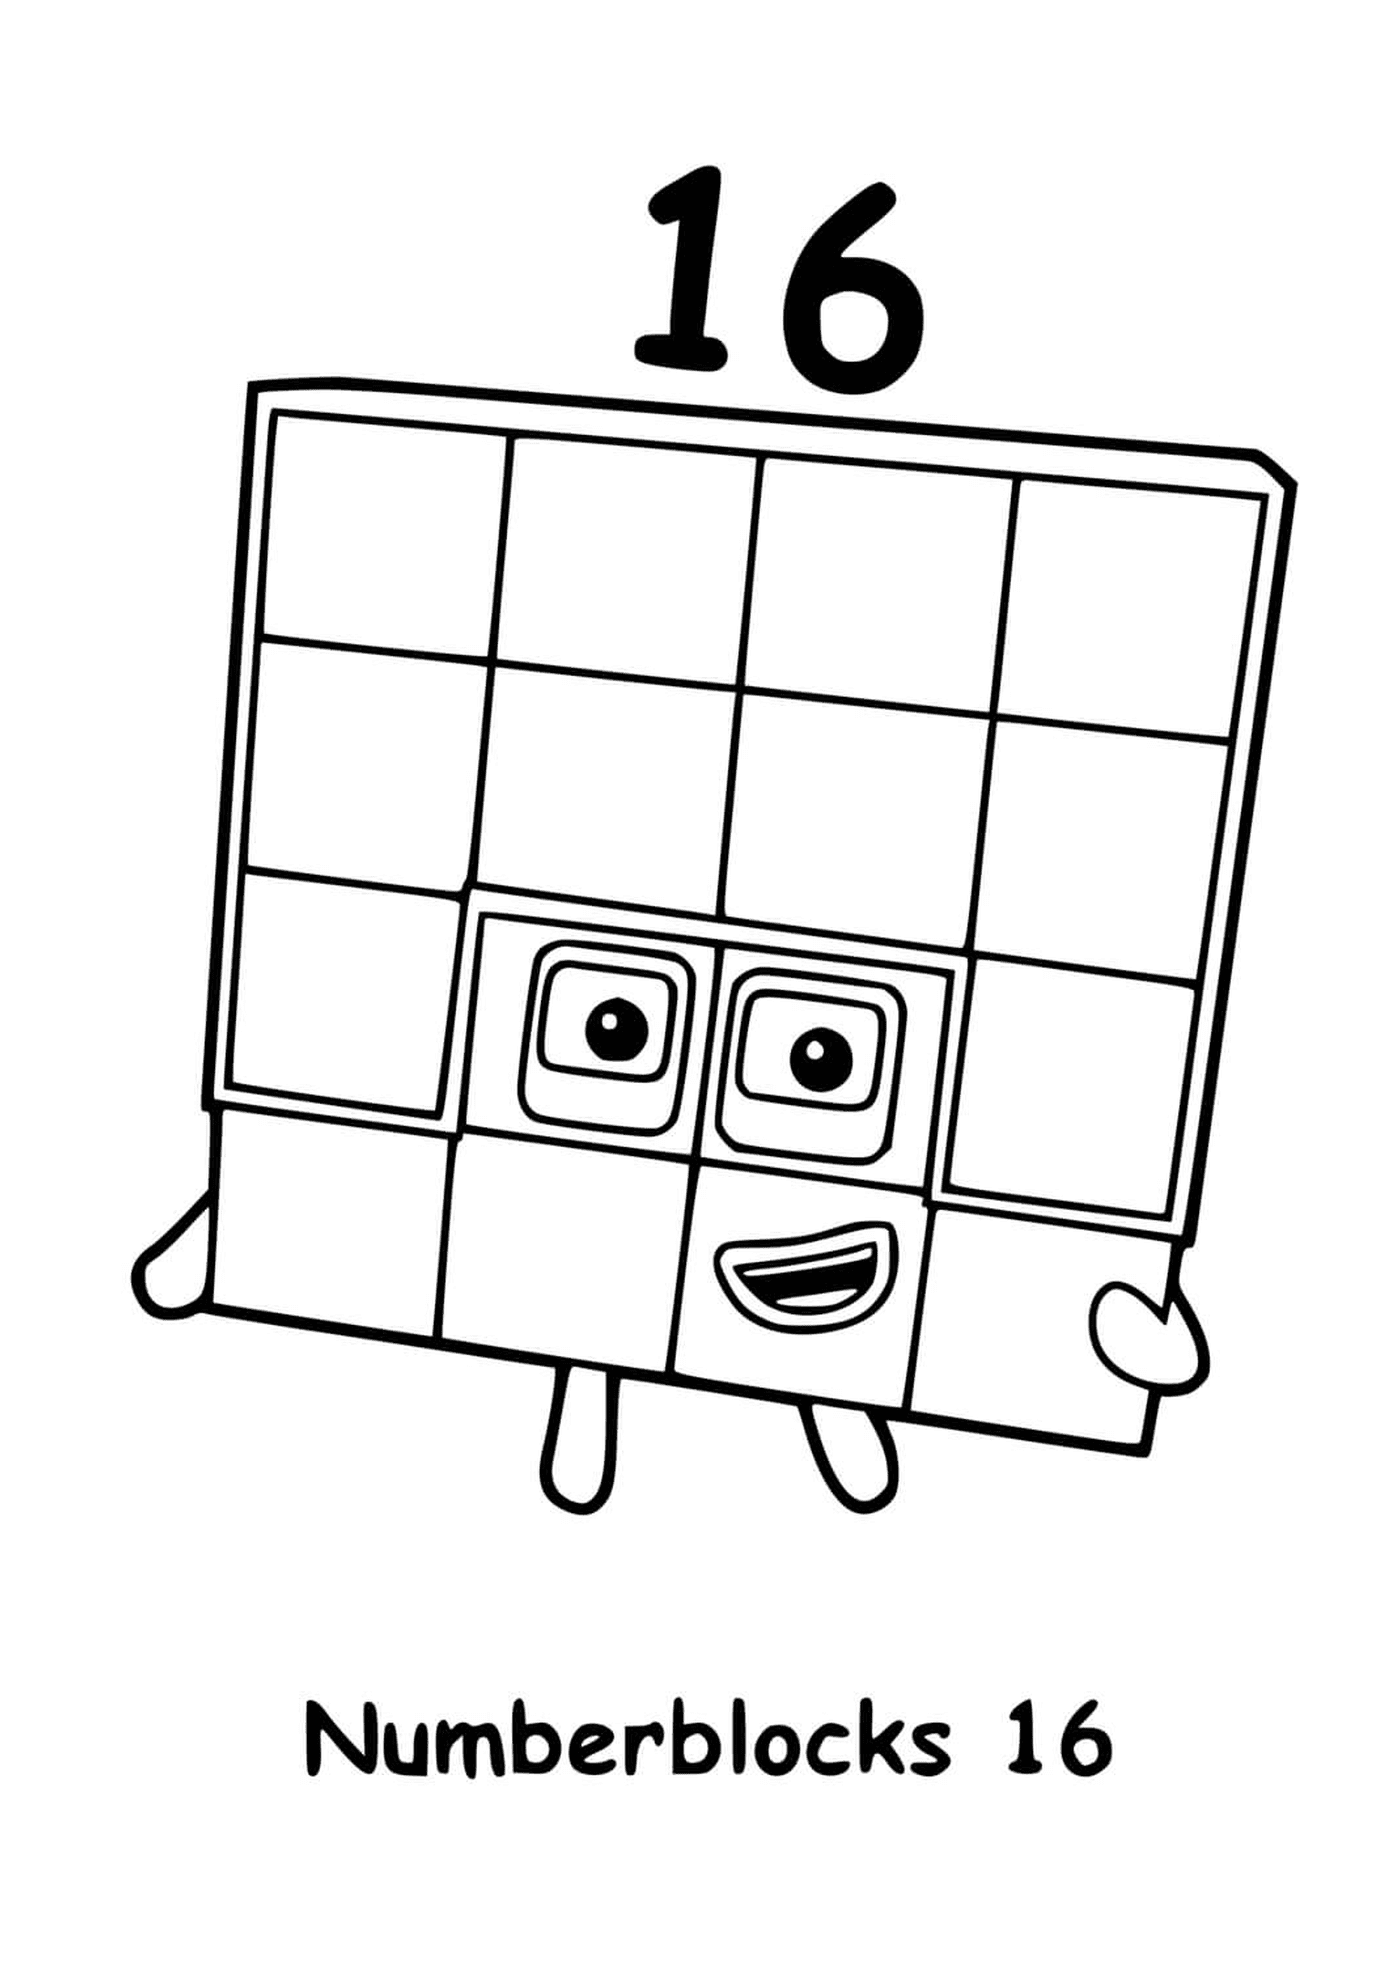  Numberblocks número 16, al cuadrado con cuadrados 